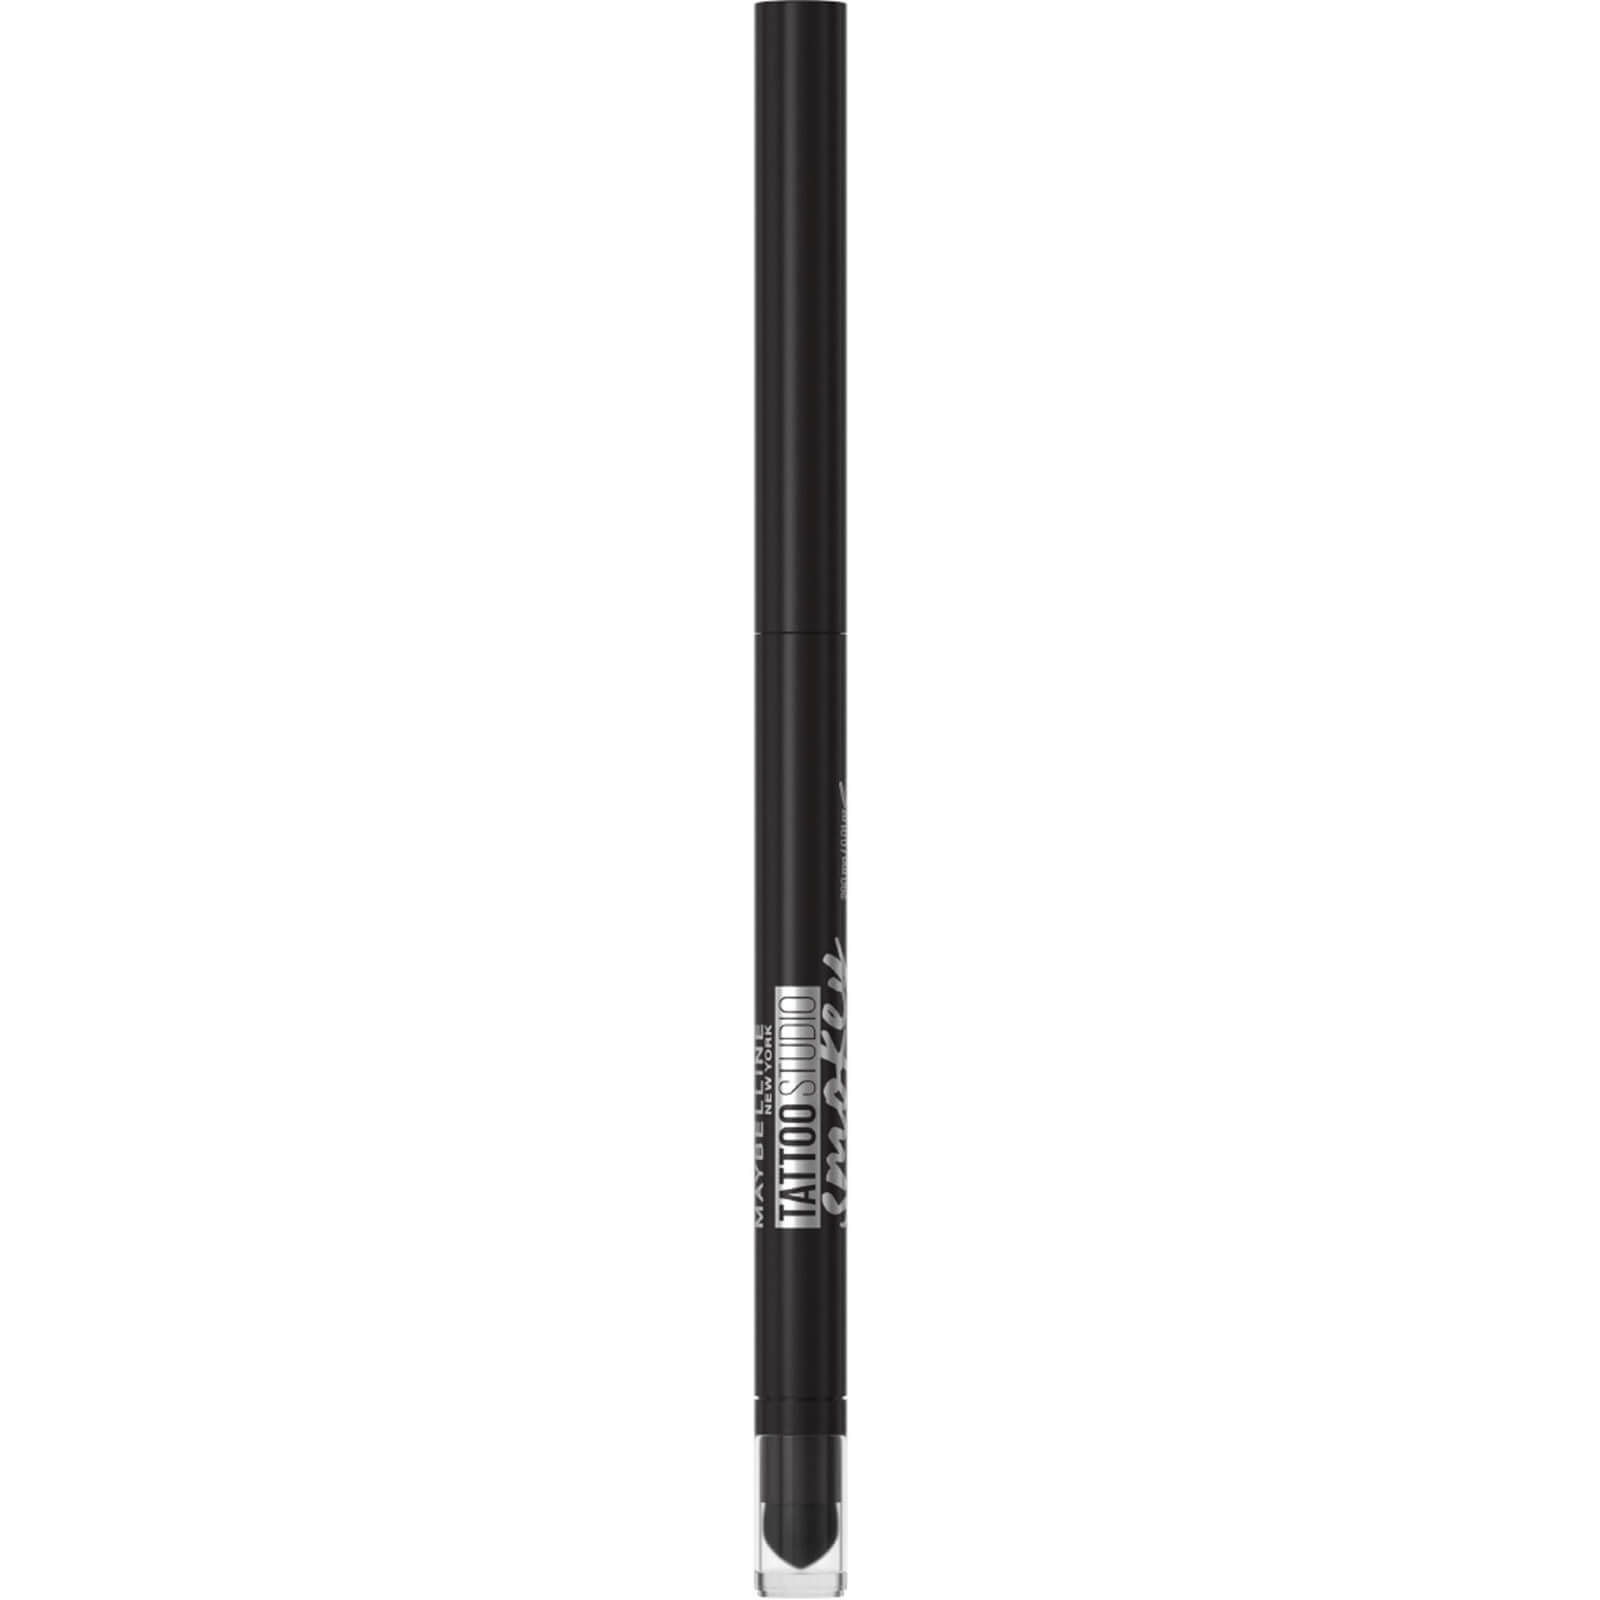 Maybelline Tattoo Liner Smokey Gel Pencil Eye Liner Waterproof 5,12g (Verschiedene Farbnuancen) - 10 Smokey Black